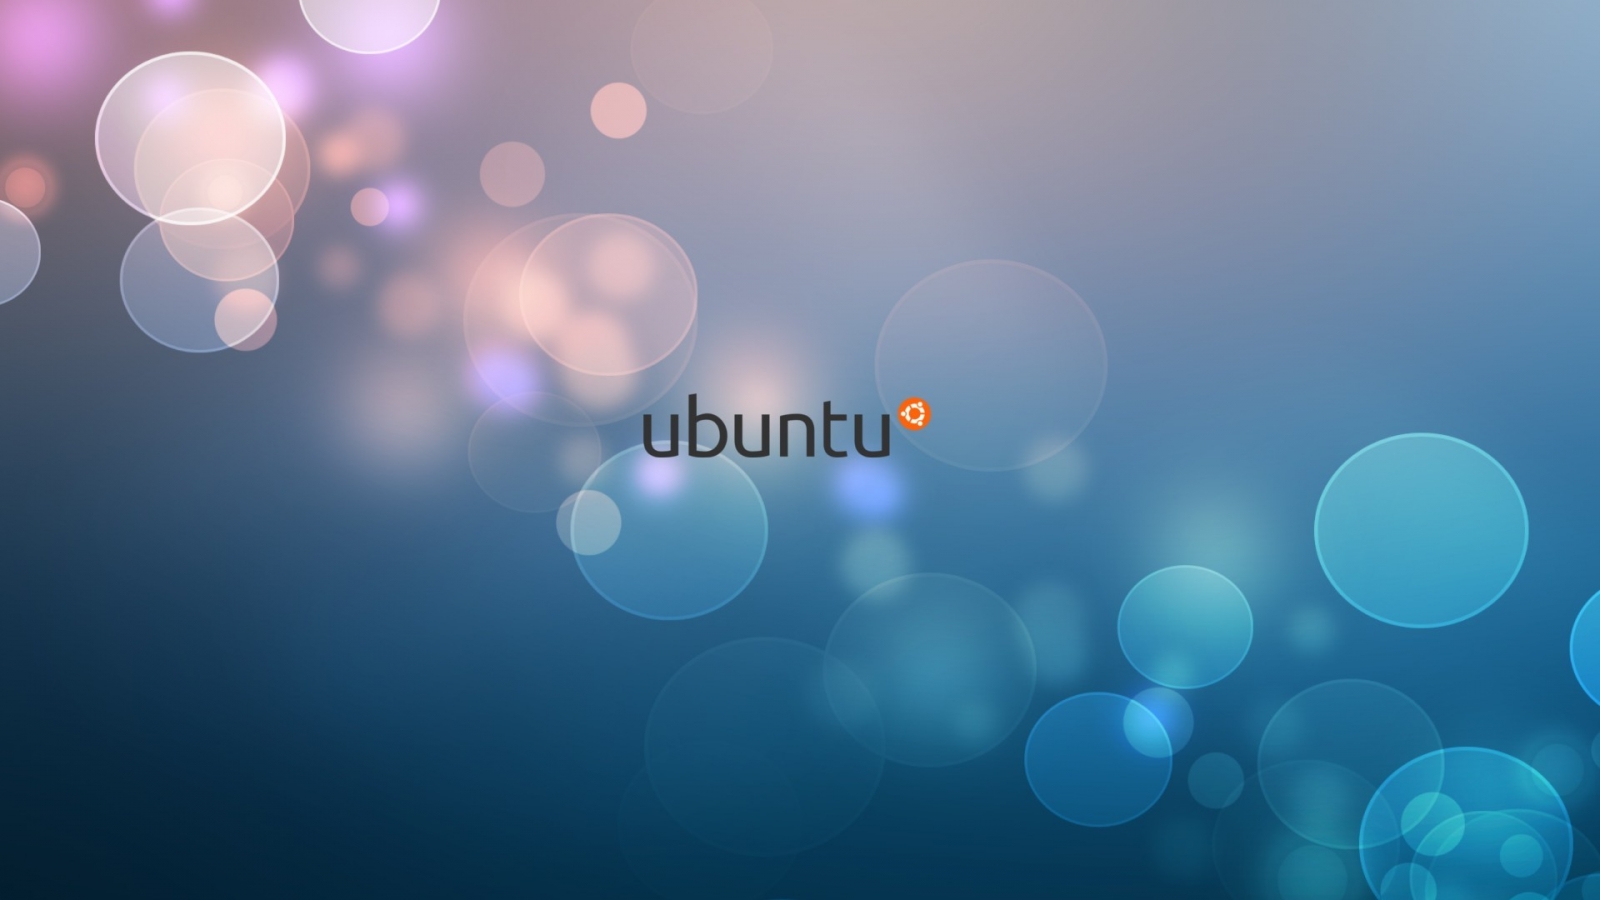 Ubuntu Minimalistic for 1600 x 900 HDTV resolution